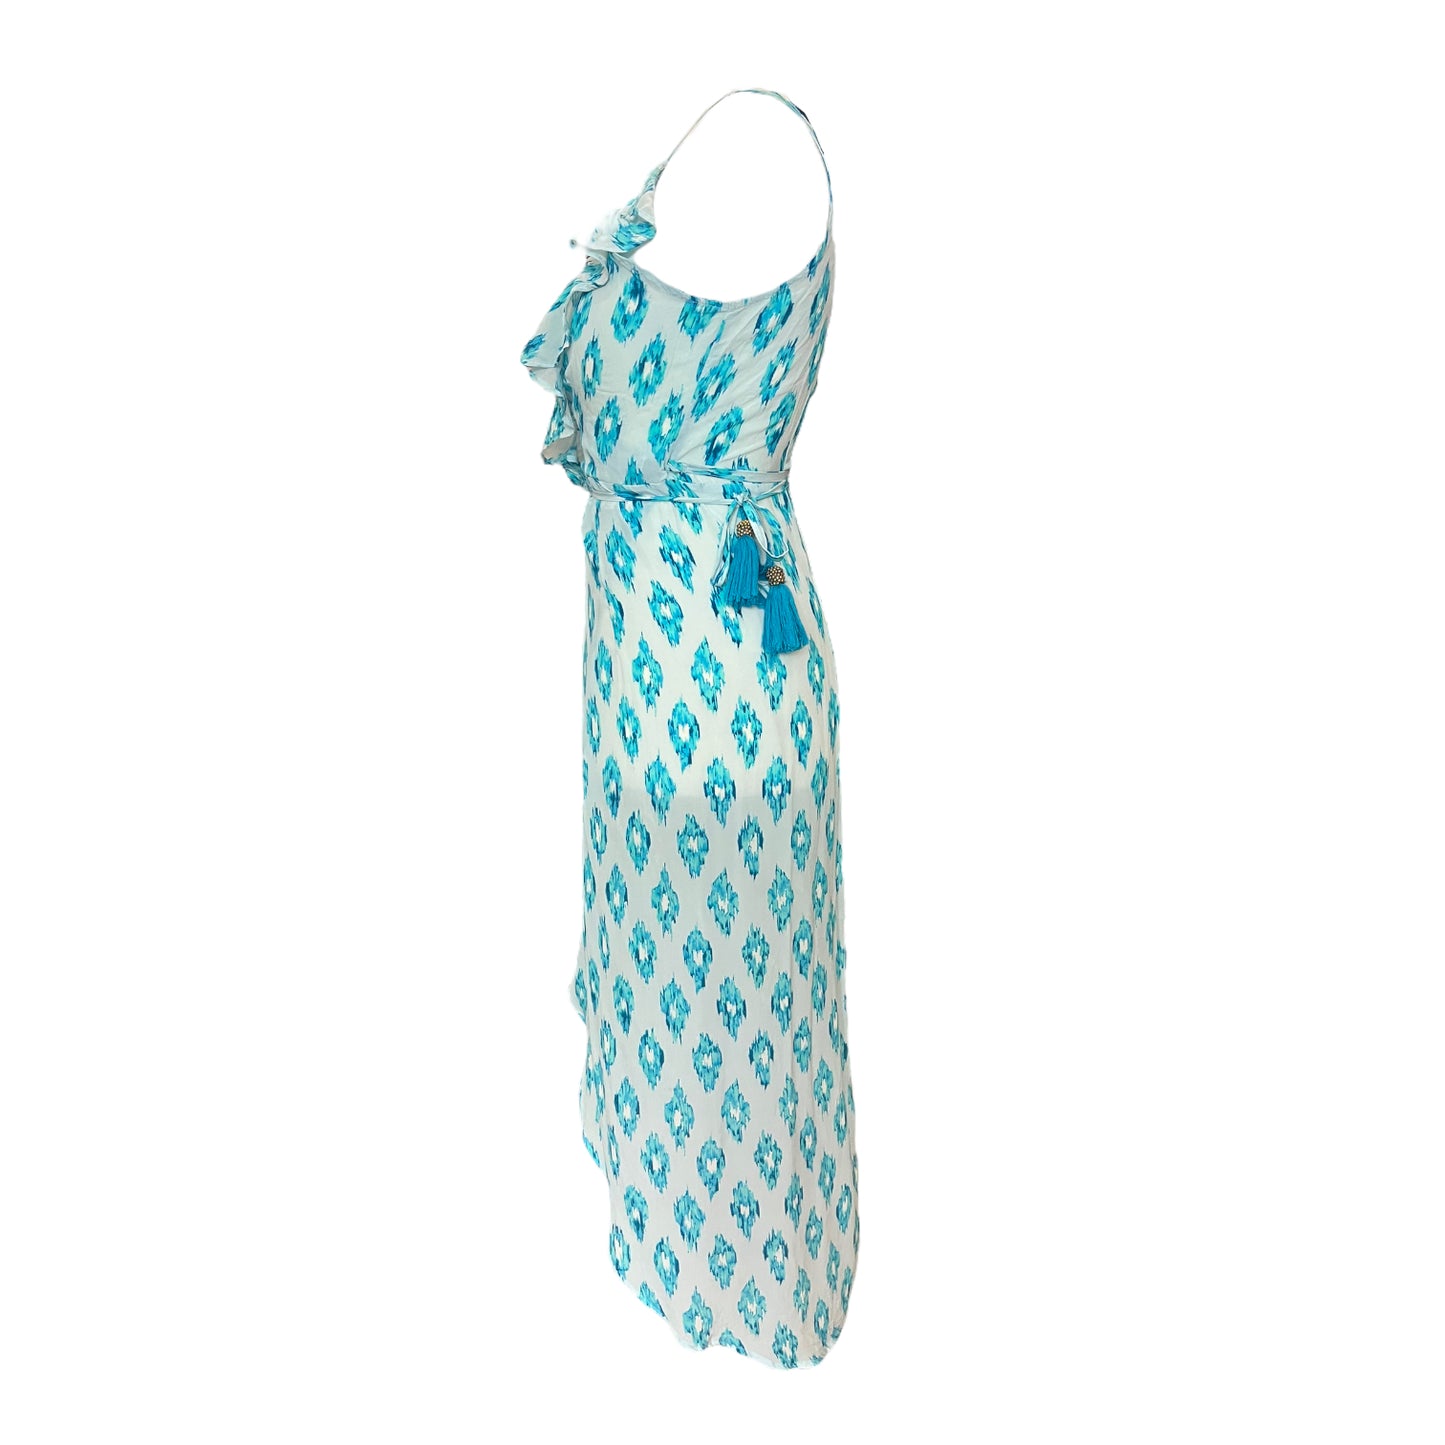 Sofia Alexia Light Blue Sleeveless Silk Wrap Dress